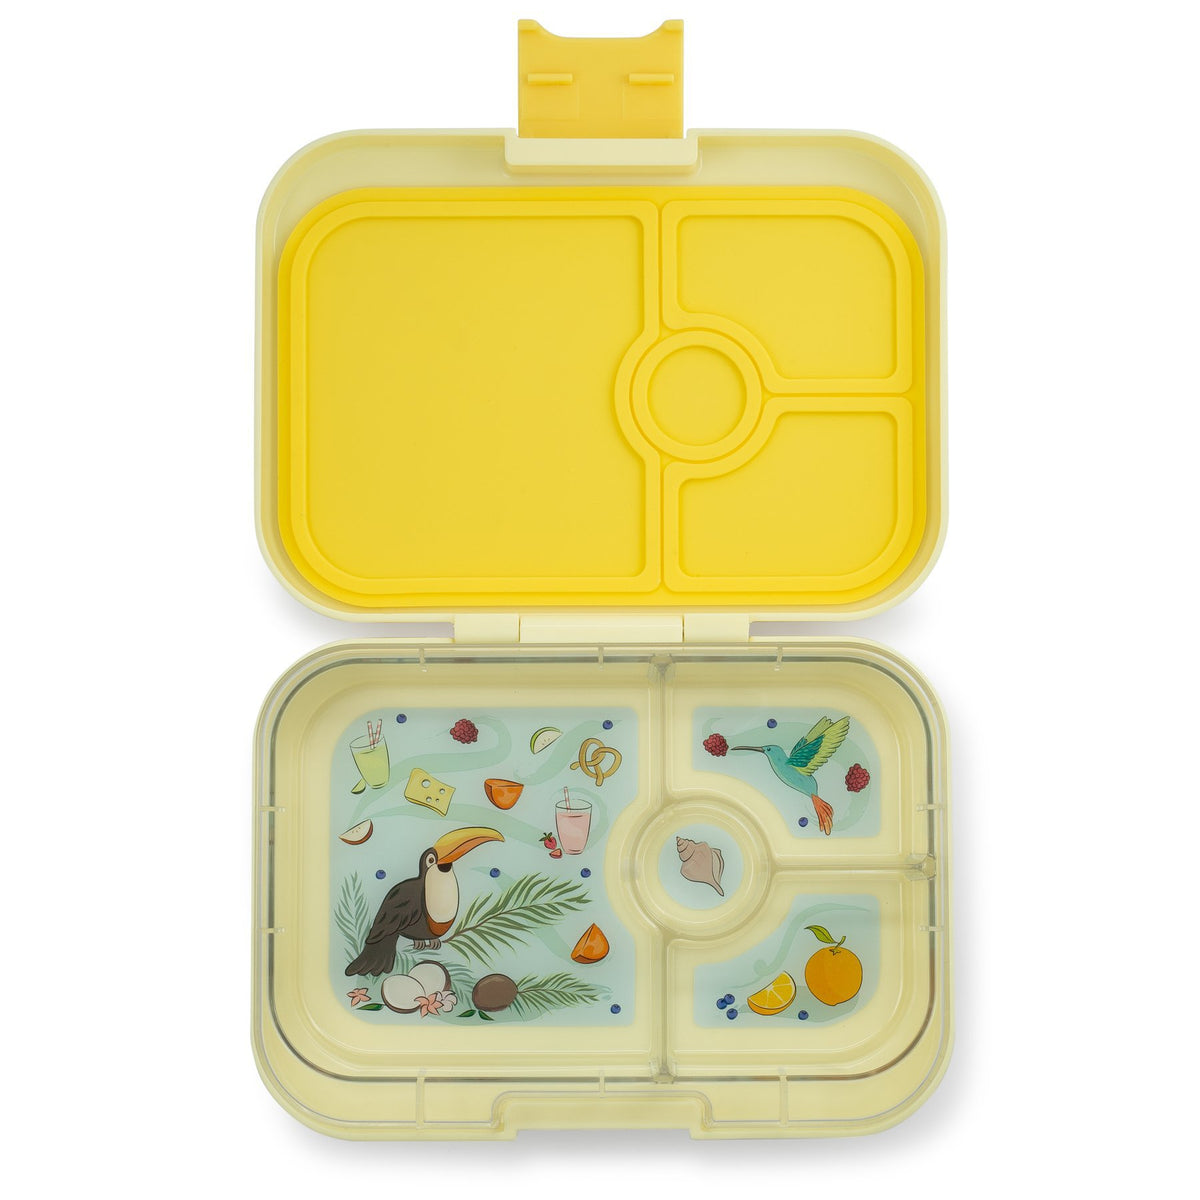 yumbox-panino-sunburst-yellow-4-compartment-lunch-box- (1)